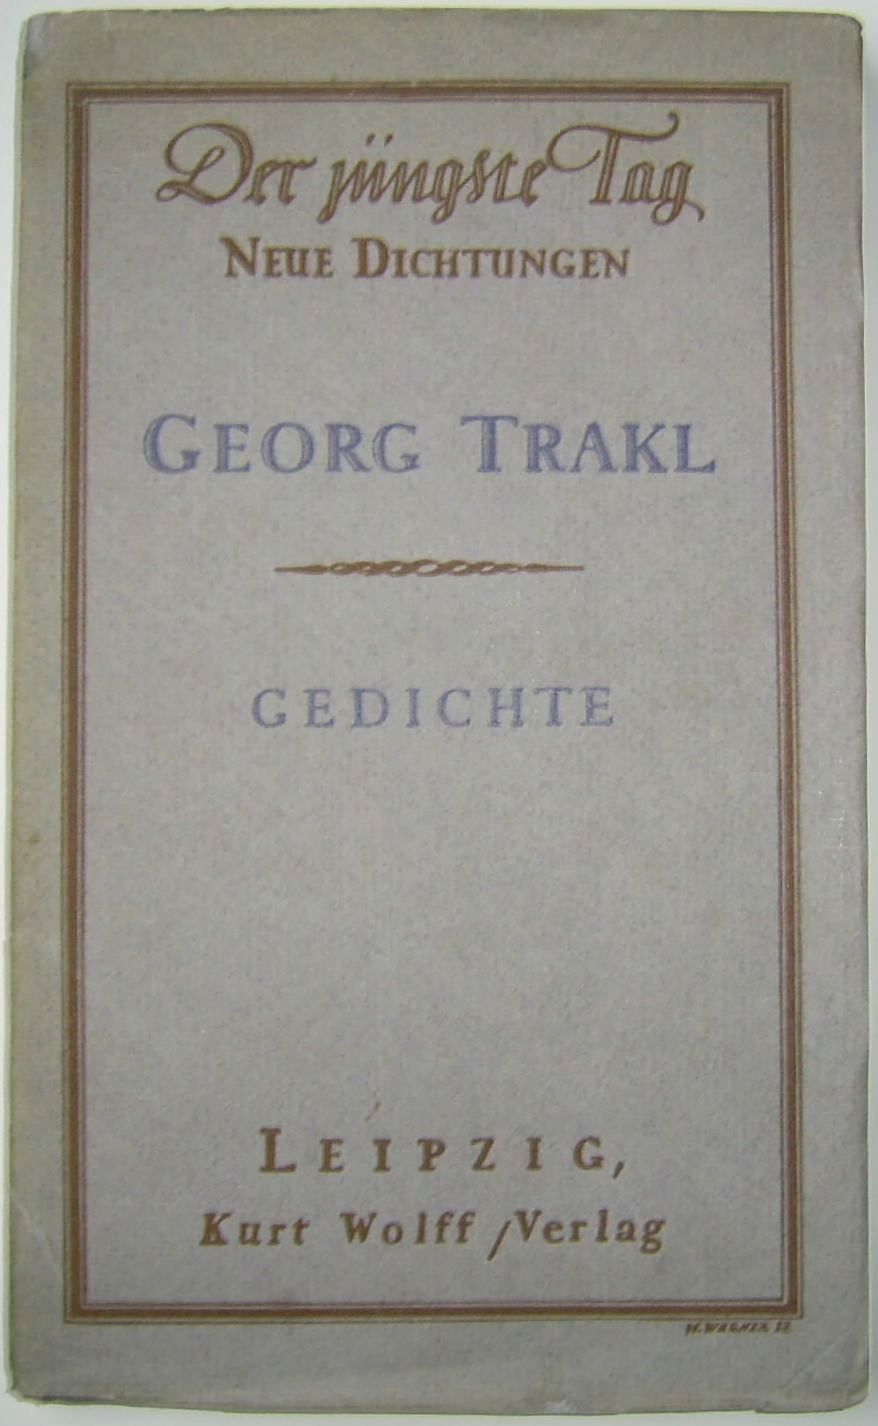 Georg_Trakl_-_Gedichte,_Erstausgabe_1913_im_Kurt_Wolff_Verlag.jpg